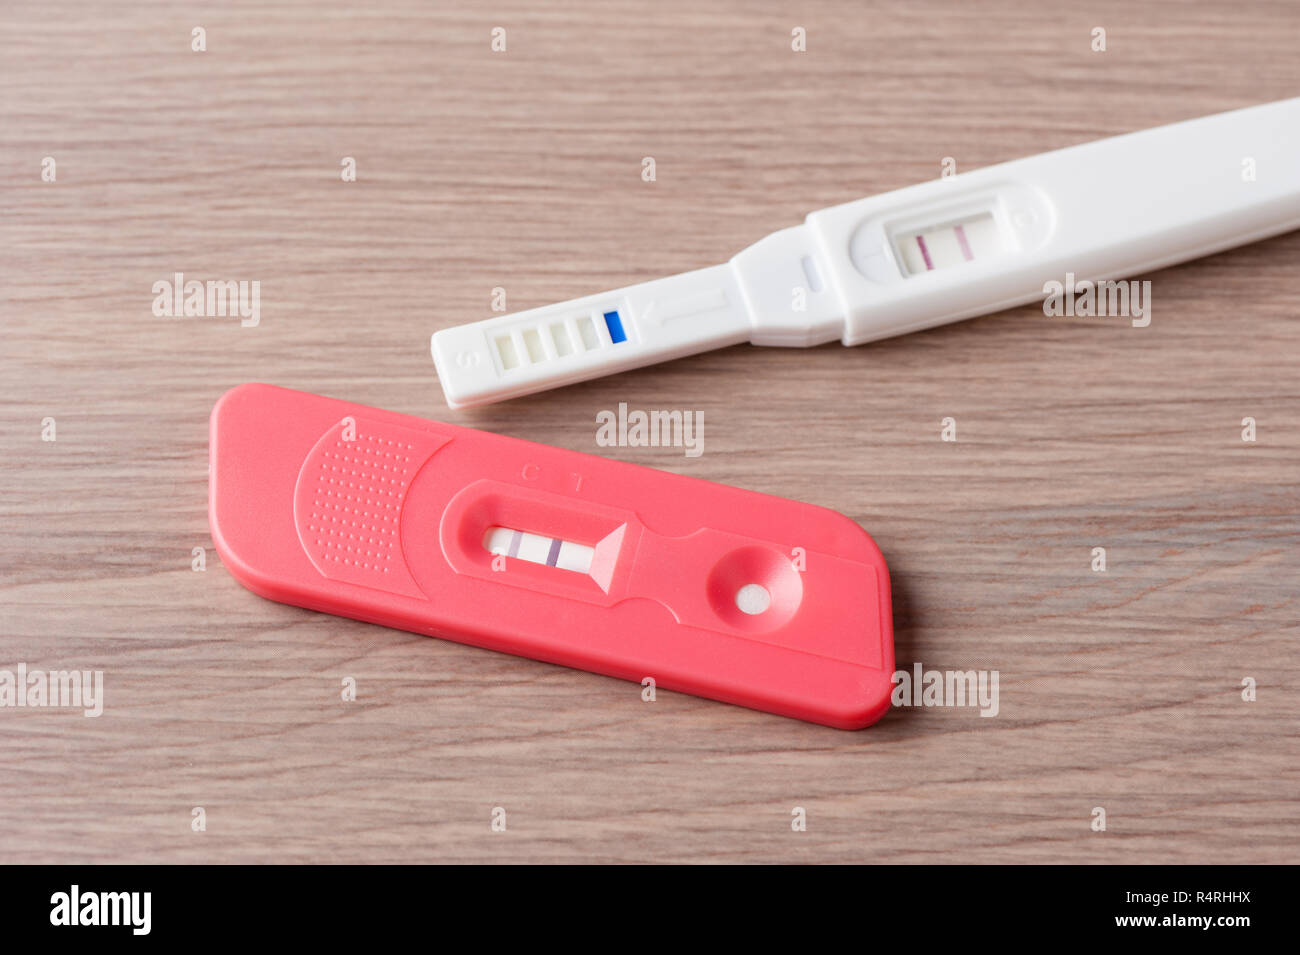 Test de grossesse gros plan avec des femmes enceintes séropositives Banque D'Images